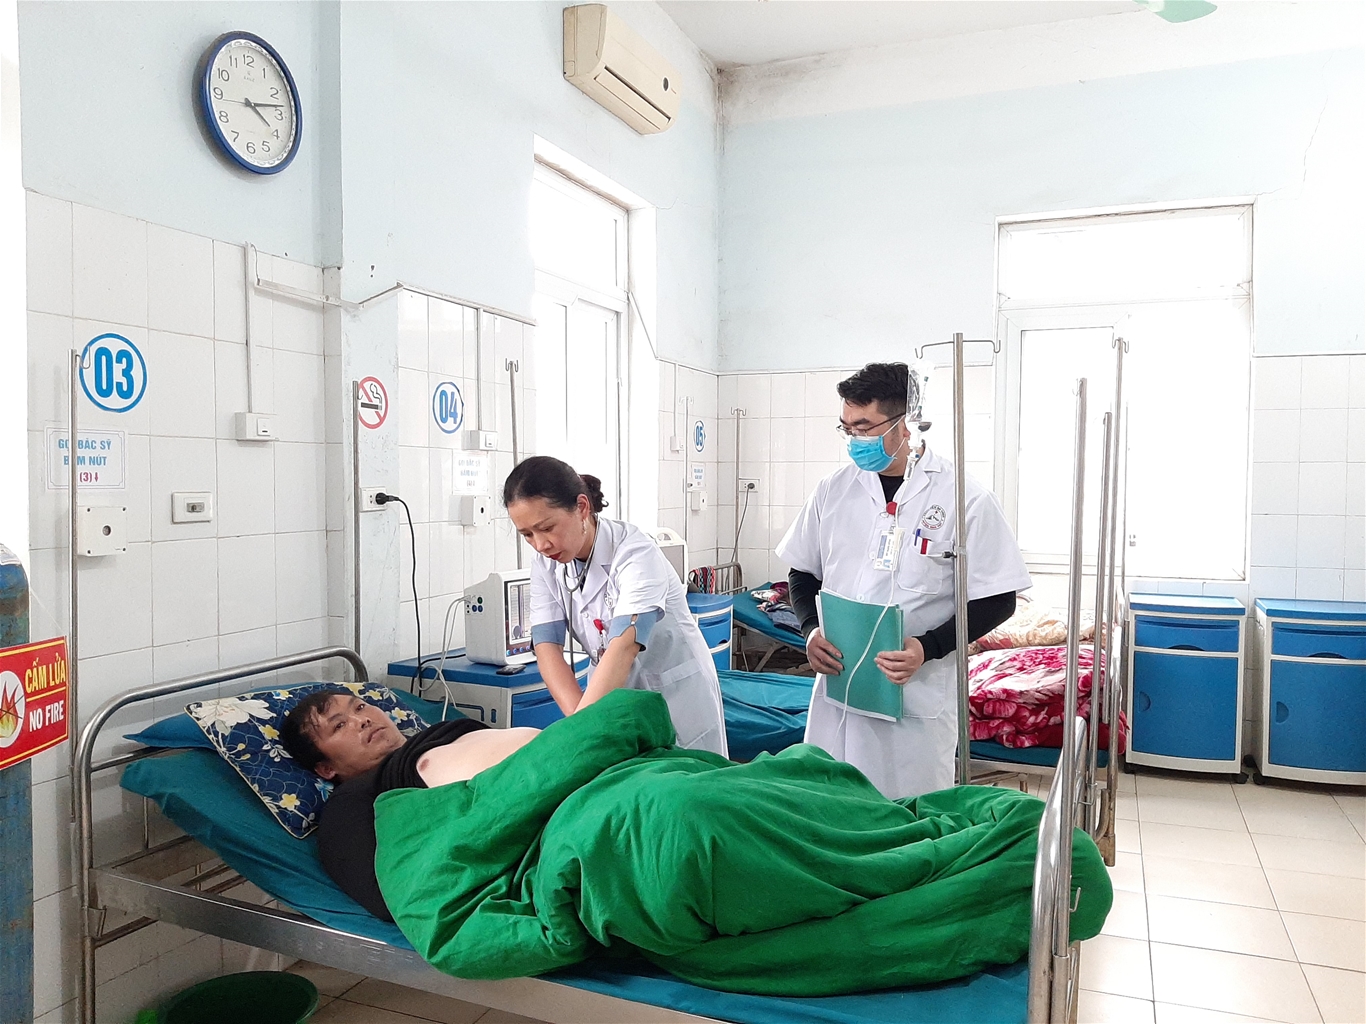 Bệnh viên Đa khoa huyện Mèo Vạc tích cực đổi mới để làm tốt nhiệm vụ chăm sóc sức khỏe người dân nơi vùng cao núi đá 7